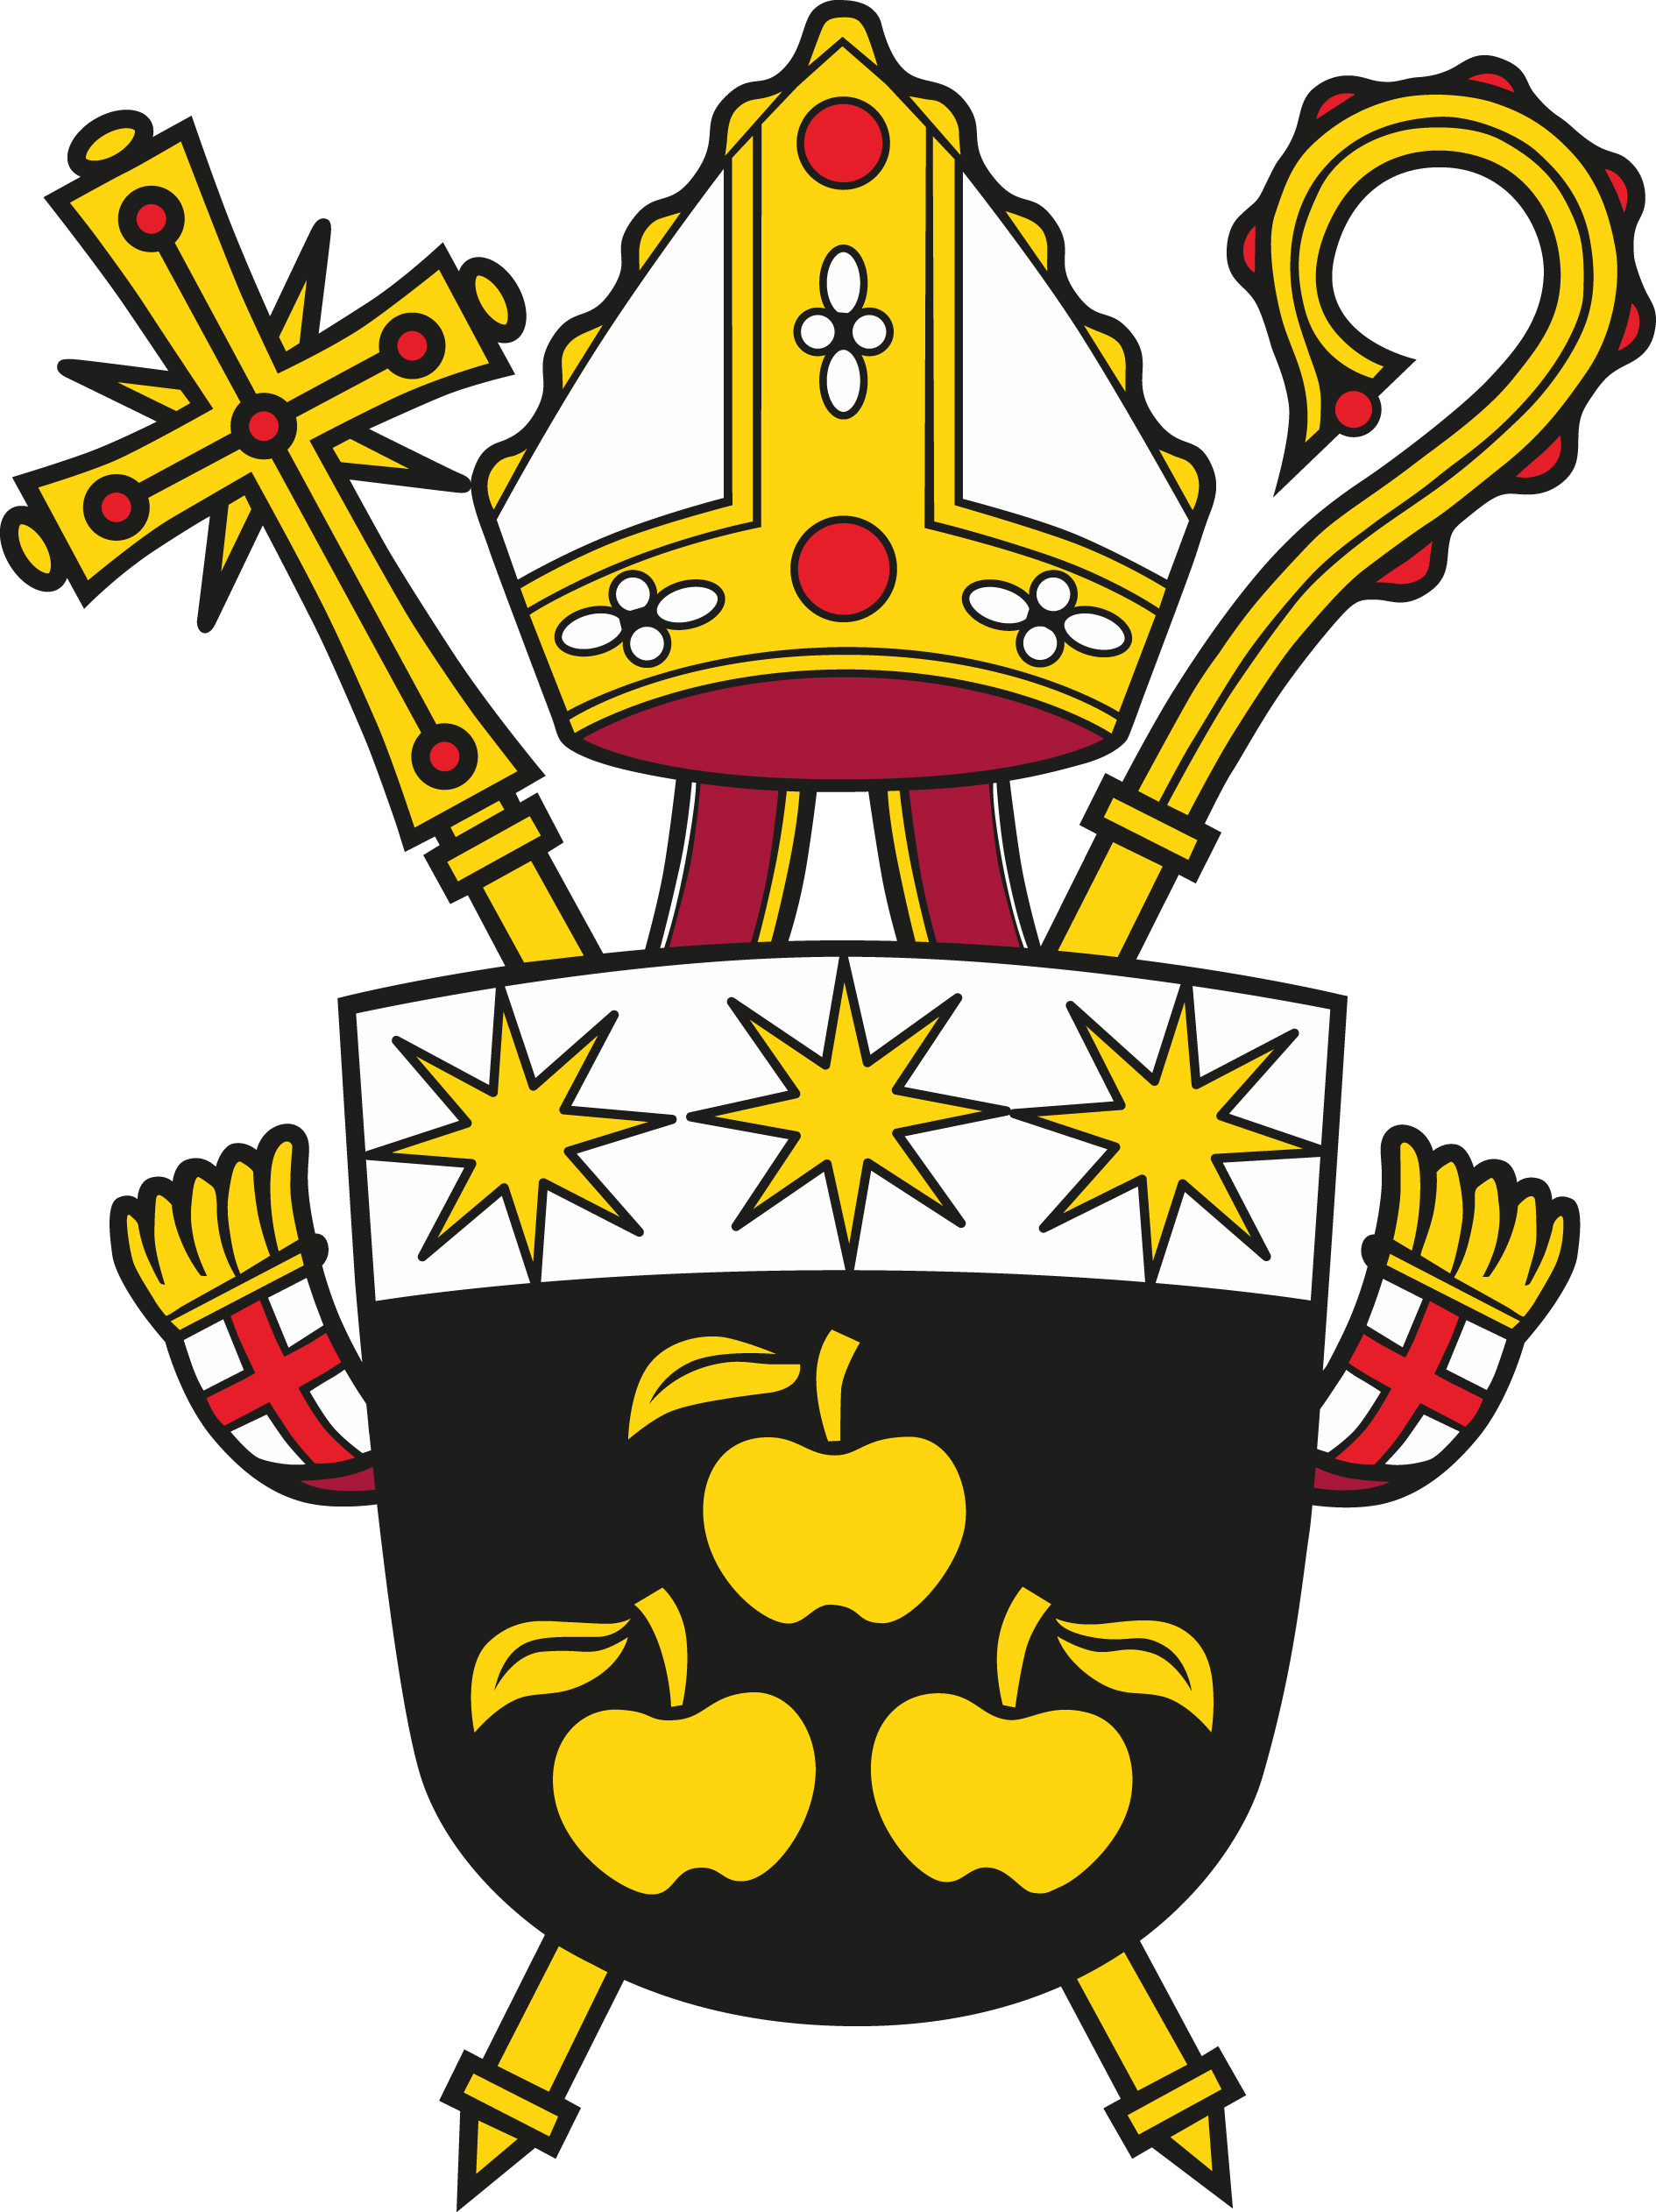 Biskupství českobudějovické - výběrové řízení na pozici dokumentátor, referent památkového oddělení